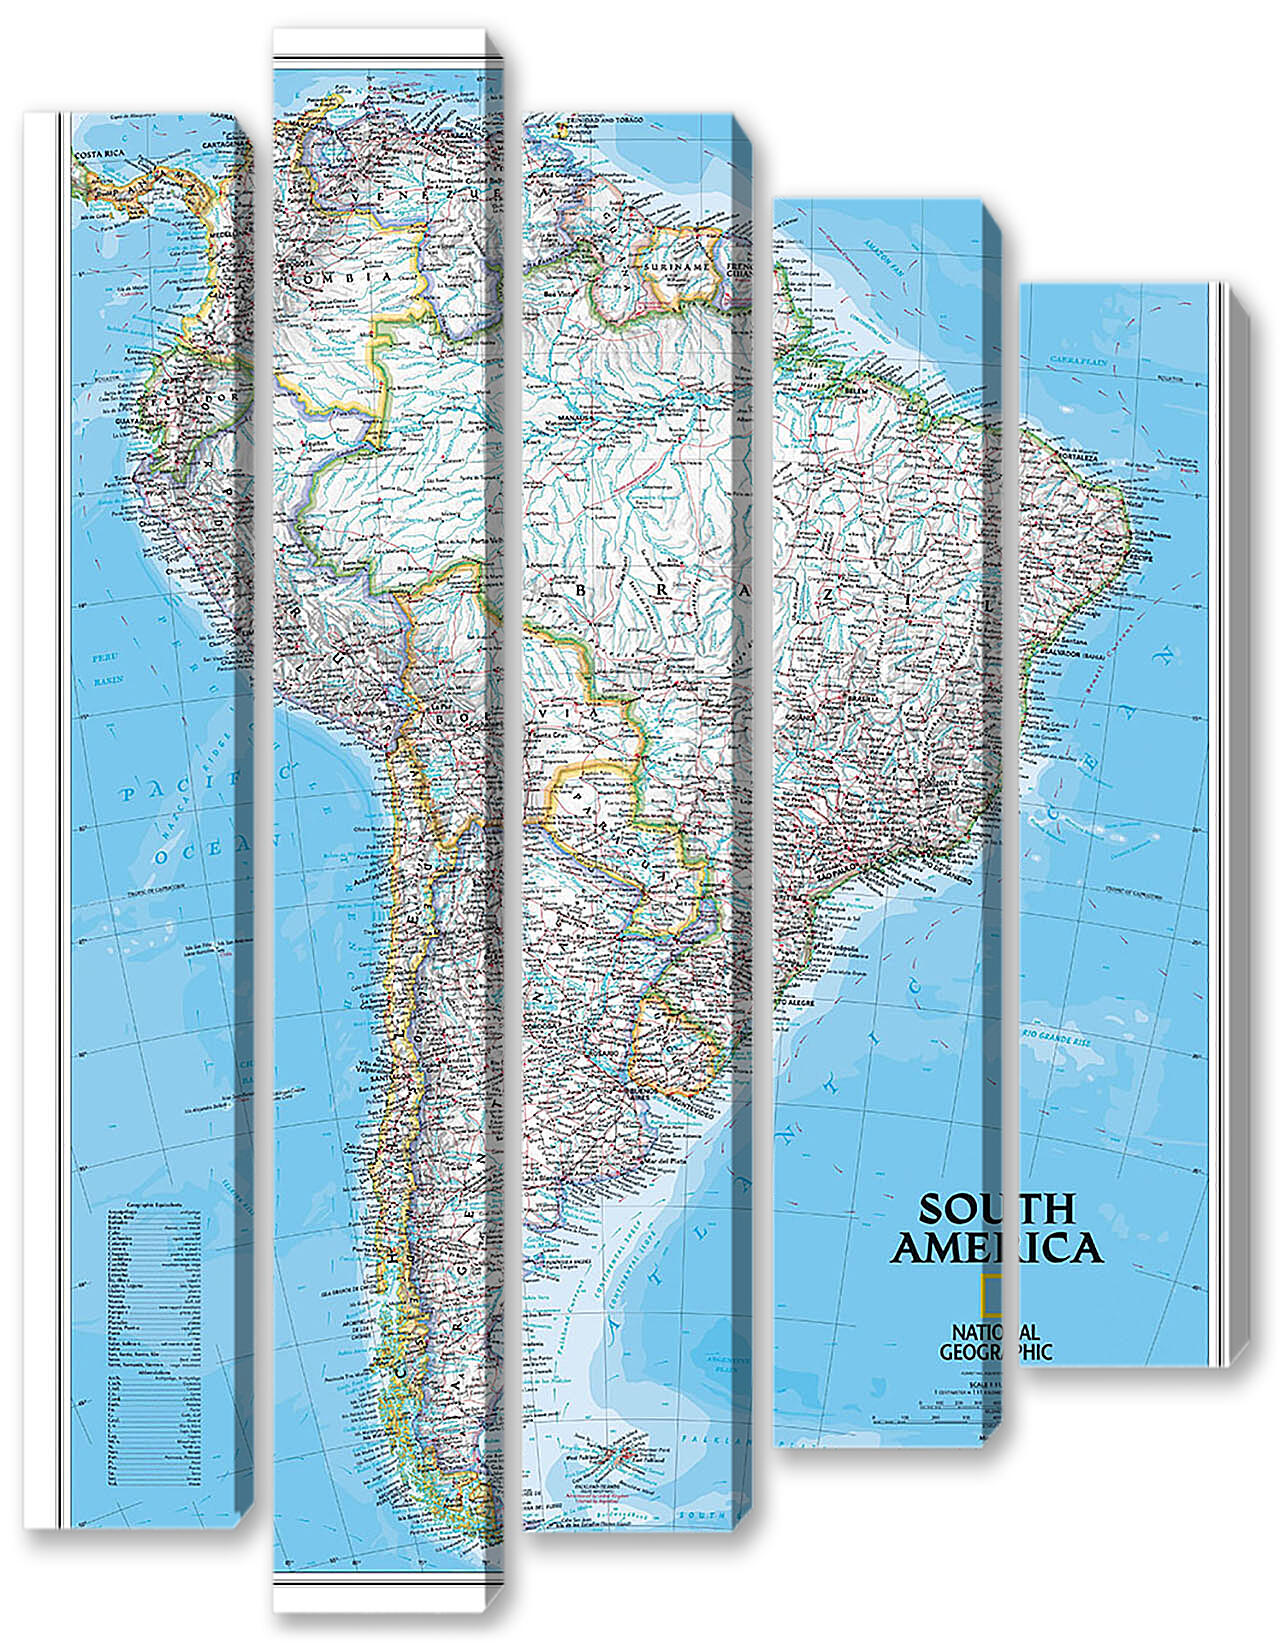 Модульная картина - Карта Южной Америки
